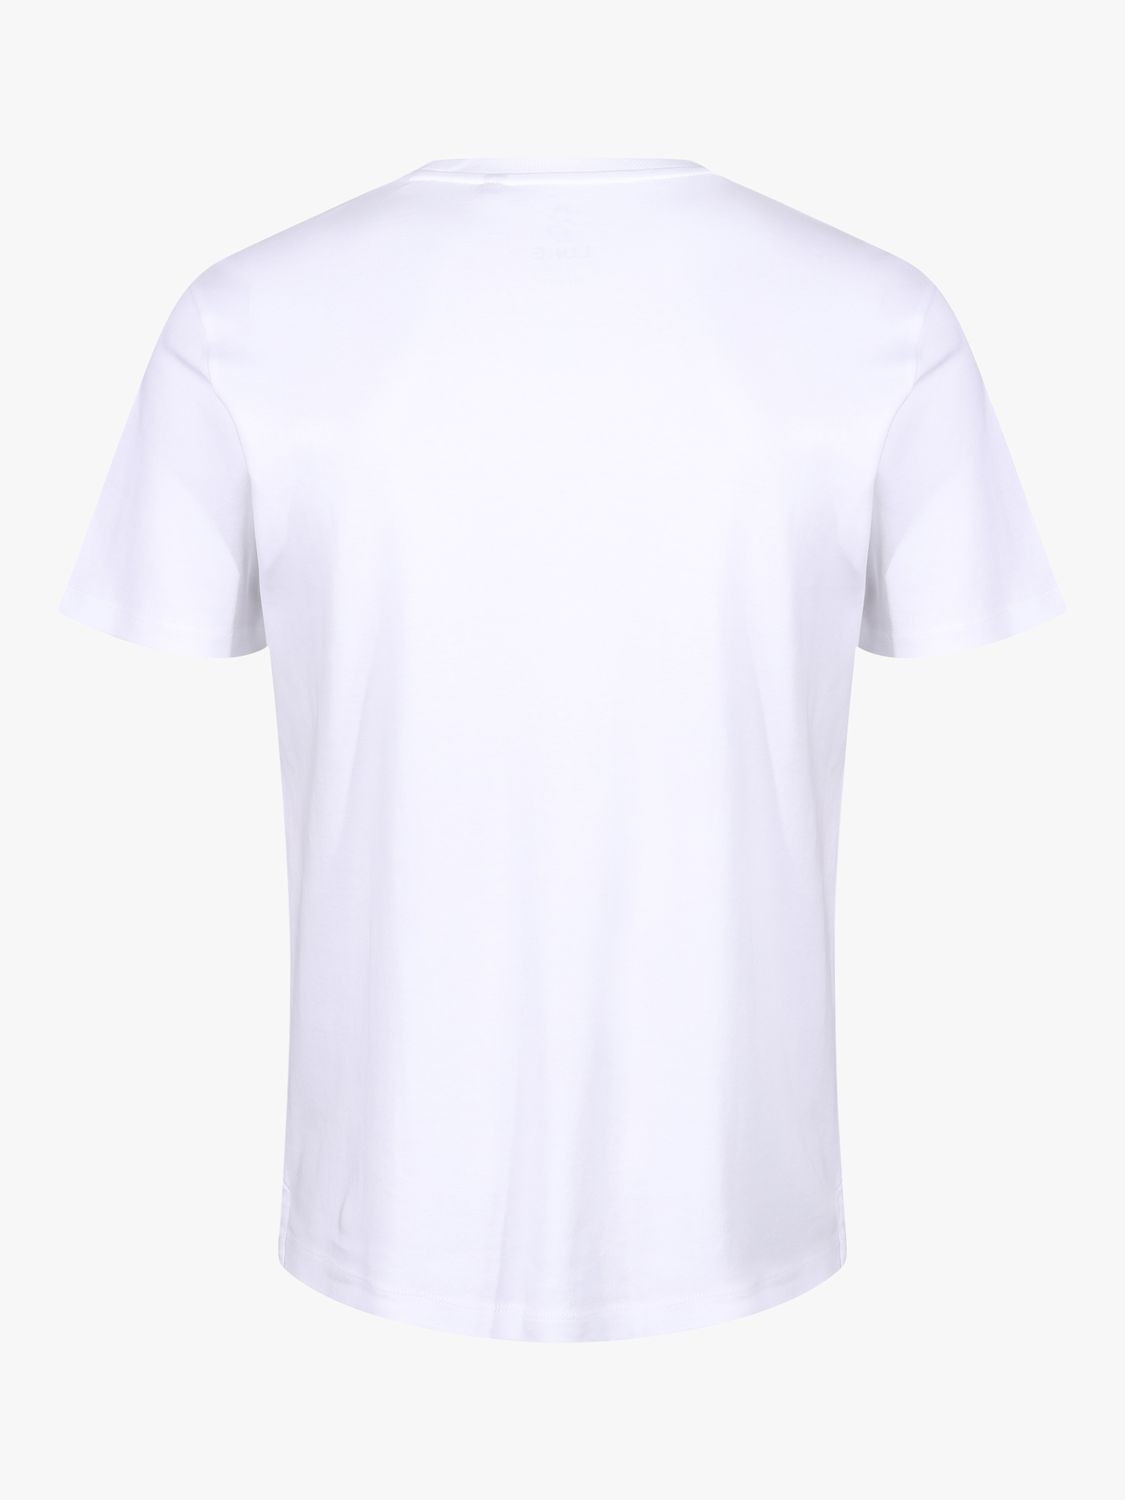 LUKE 1977 Center Fold T-Shirt, White, S